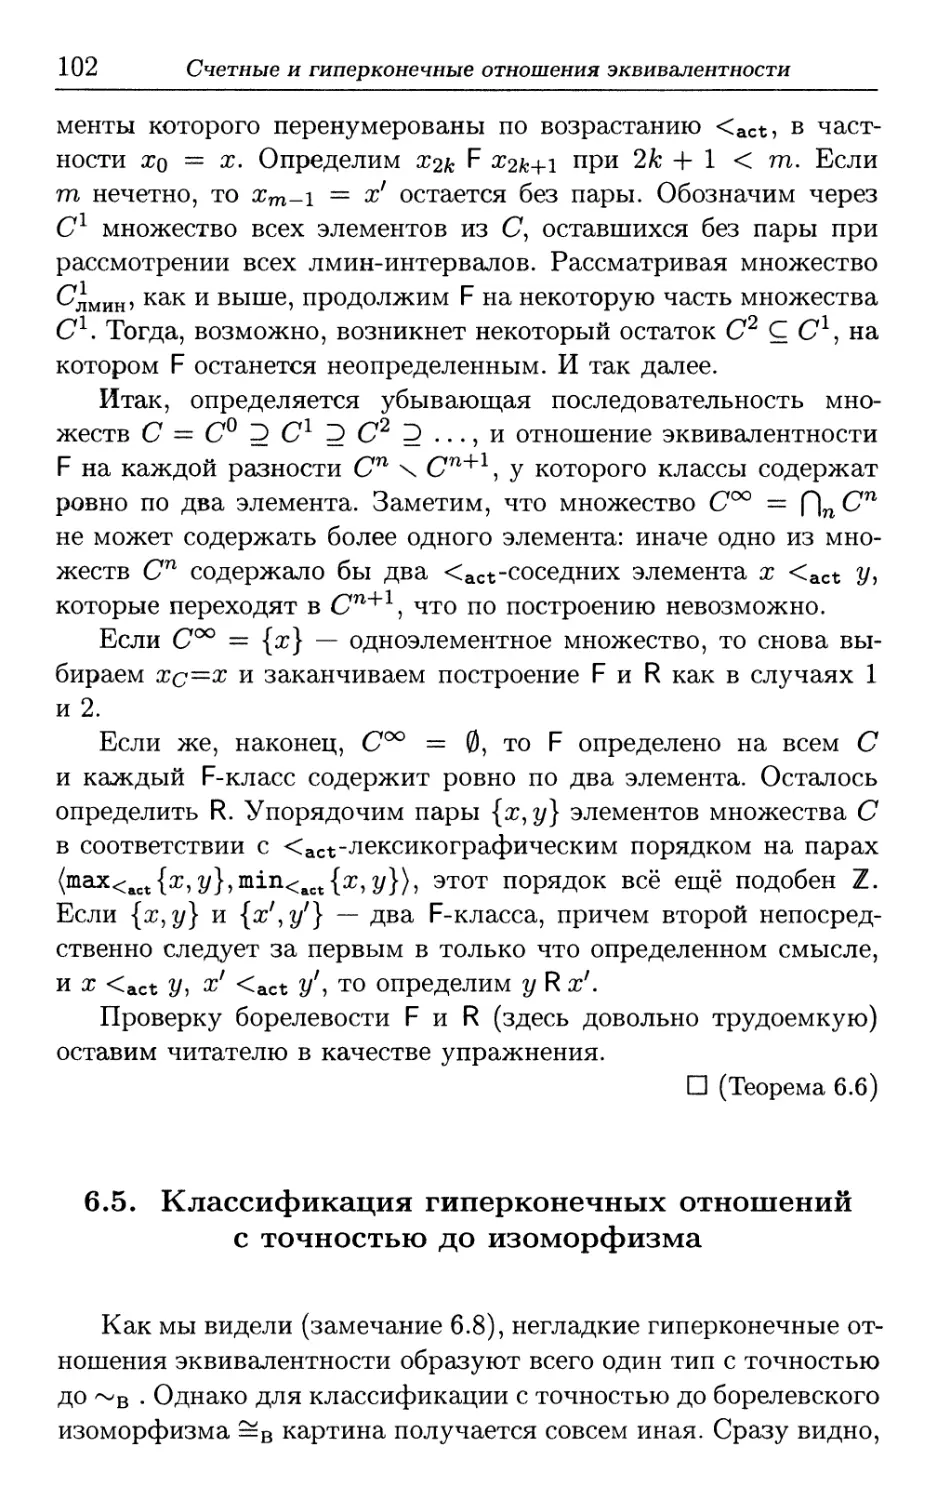 6.5. Классификация гиперконечных отношений с точностью до изоморфизма